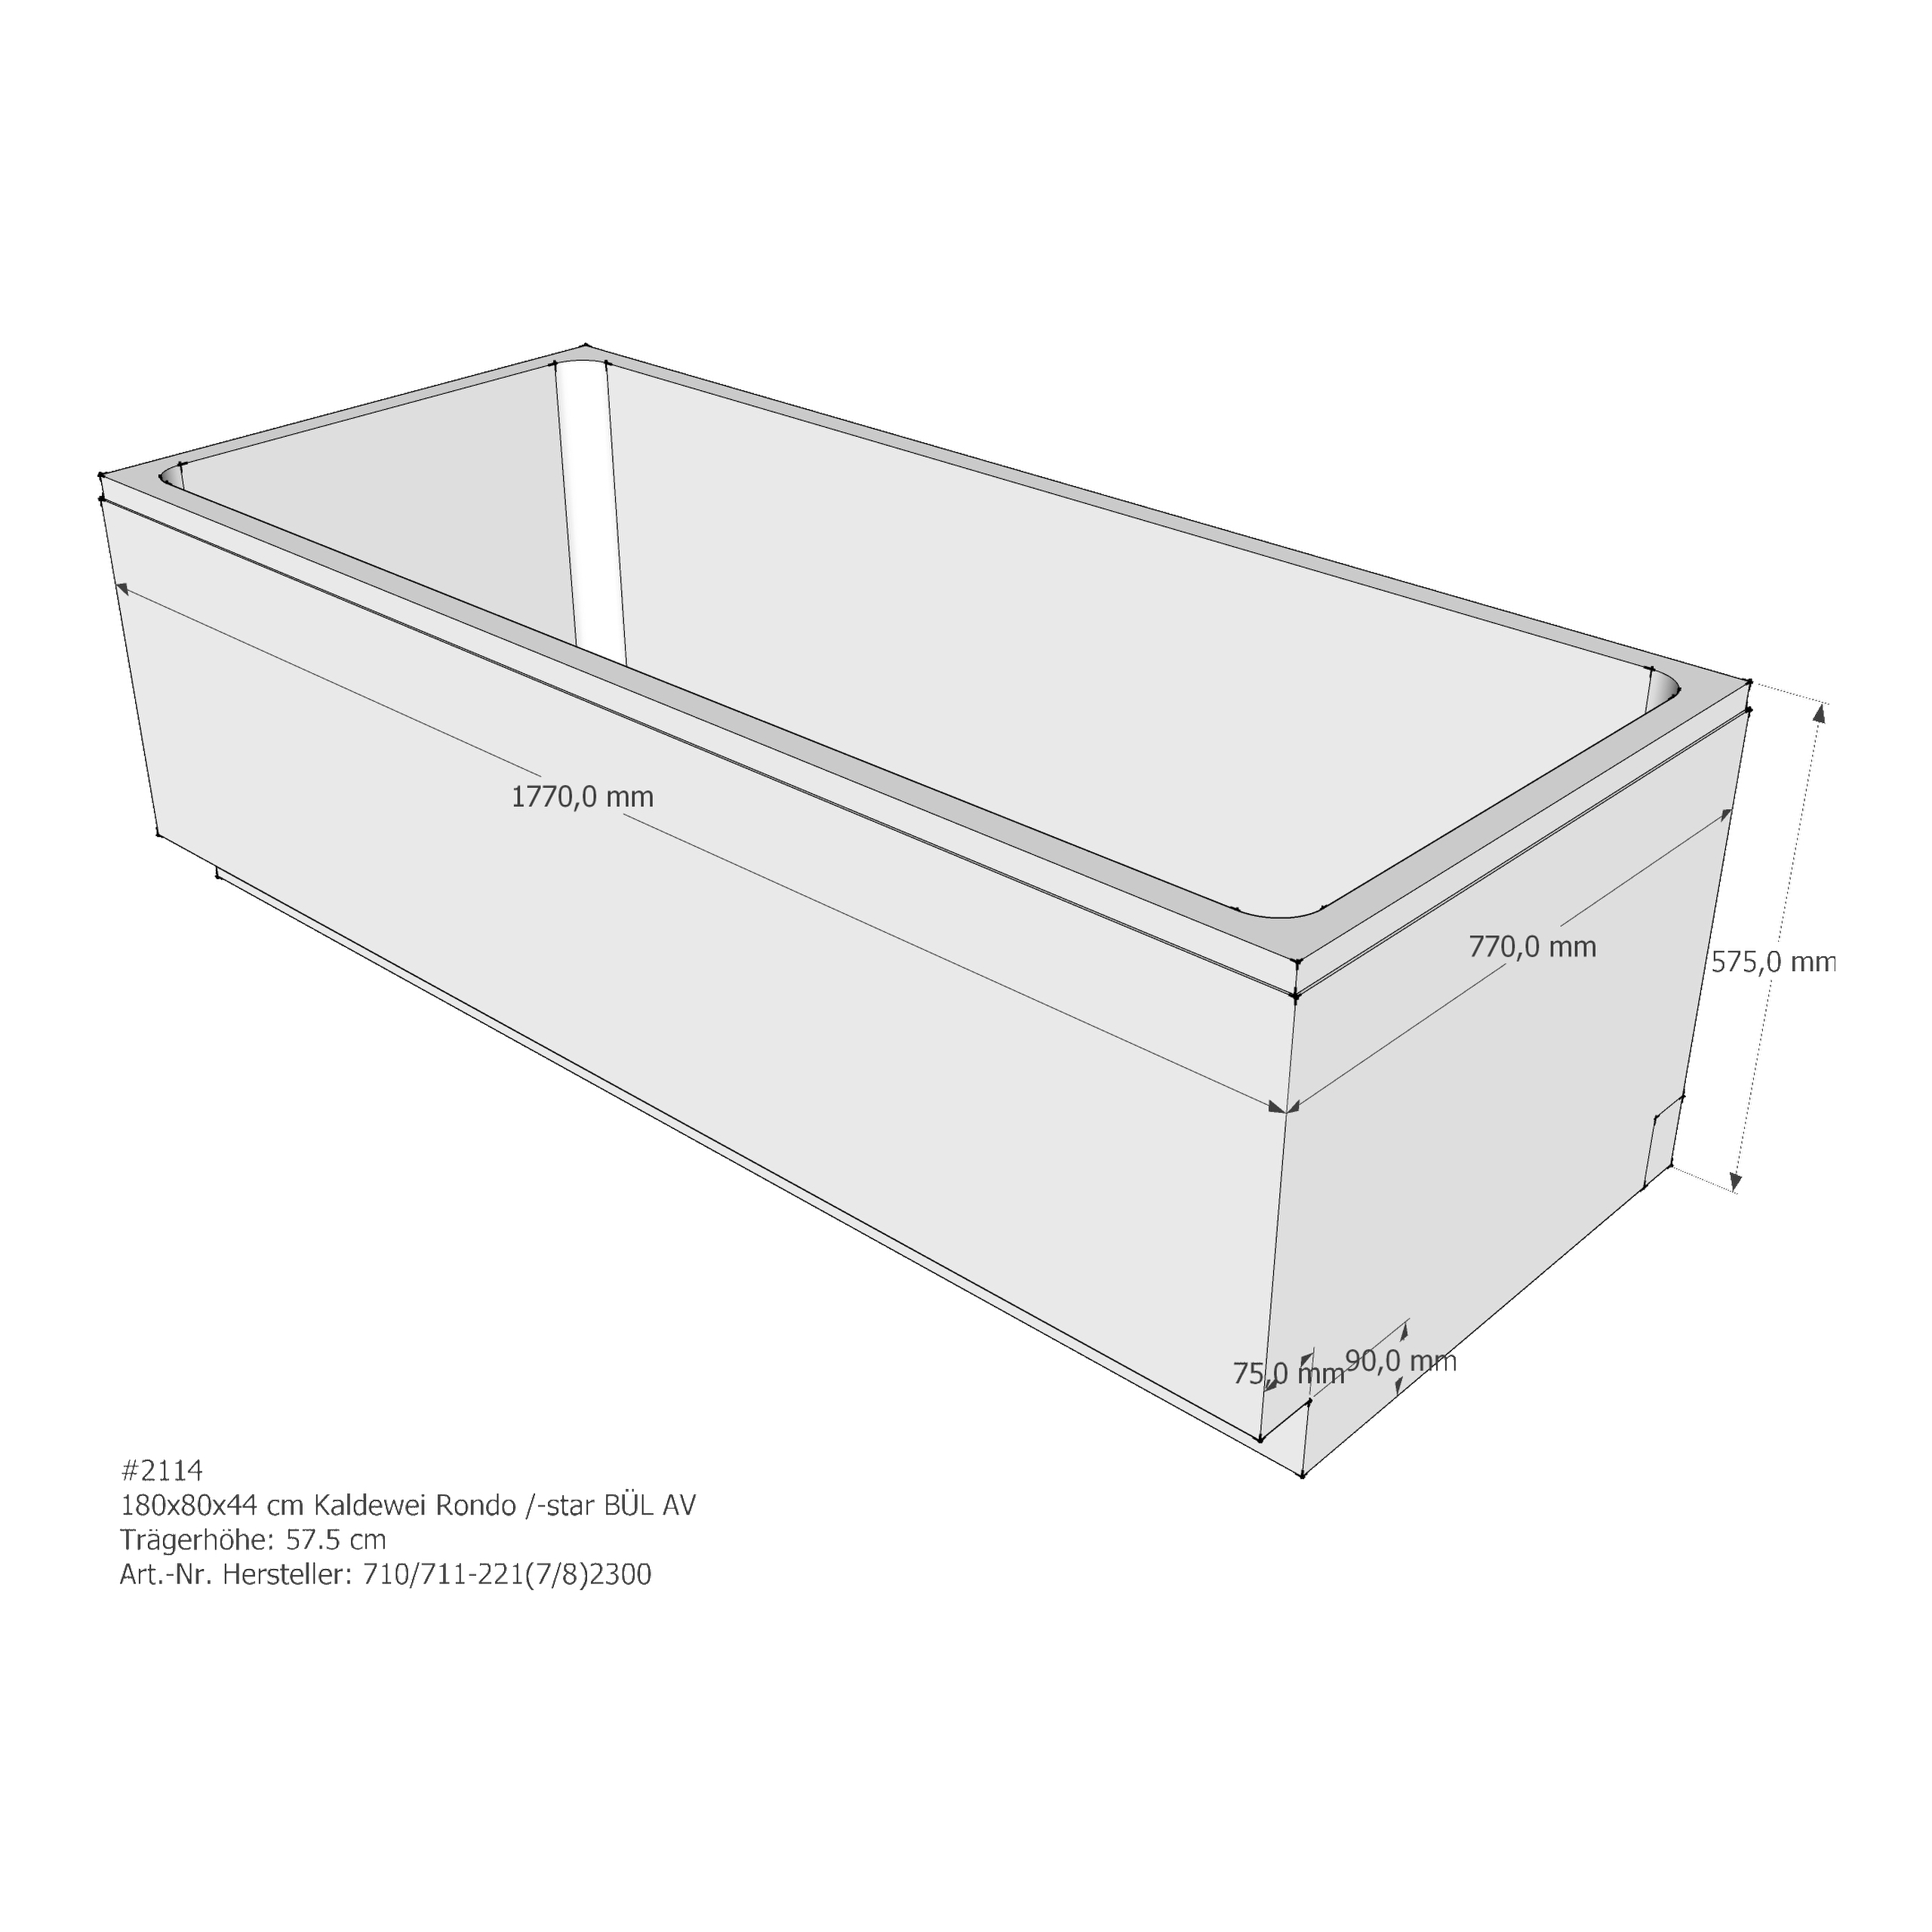 Badewannenträger für Kaldewei Rondo /-Star 180 × 80 × 44 cm